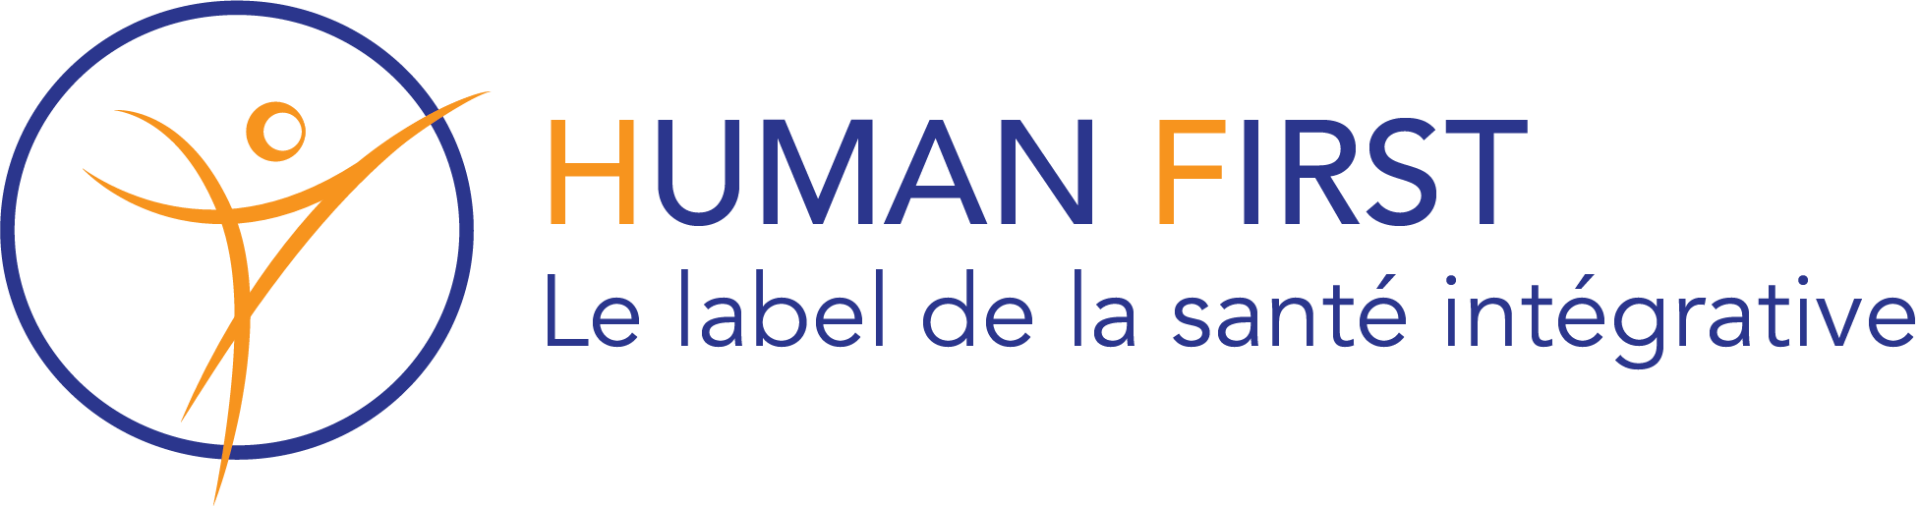 Human First Le label de la santé intégrative